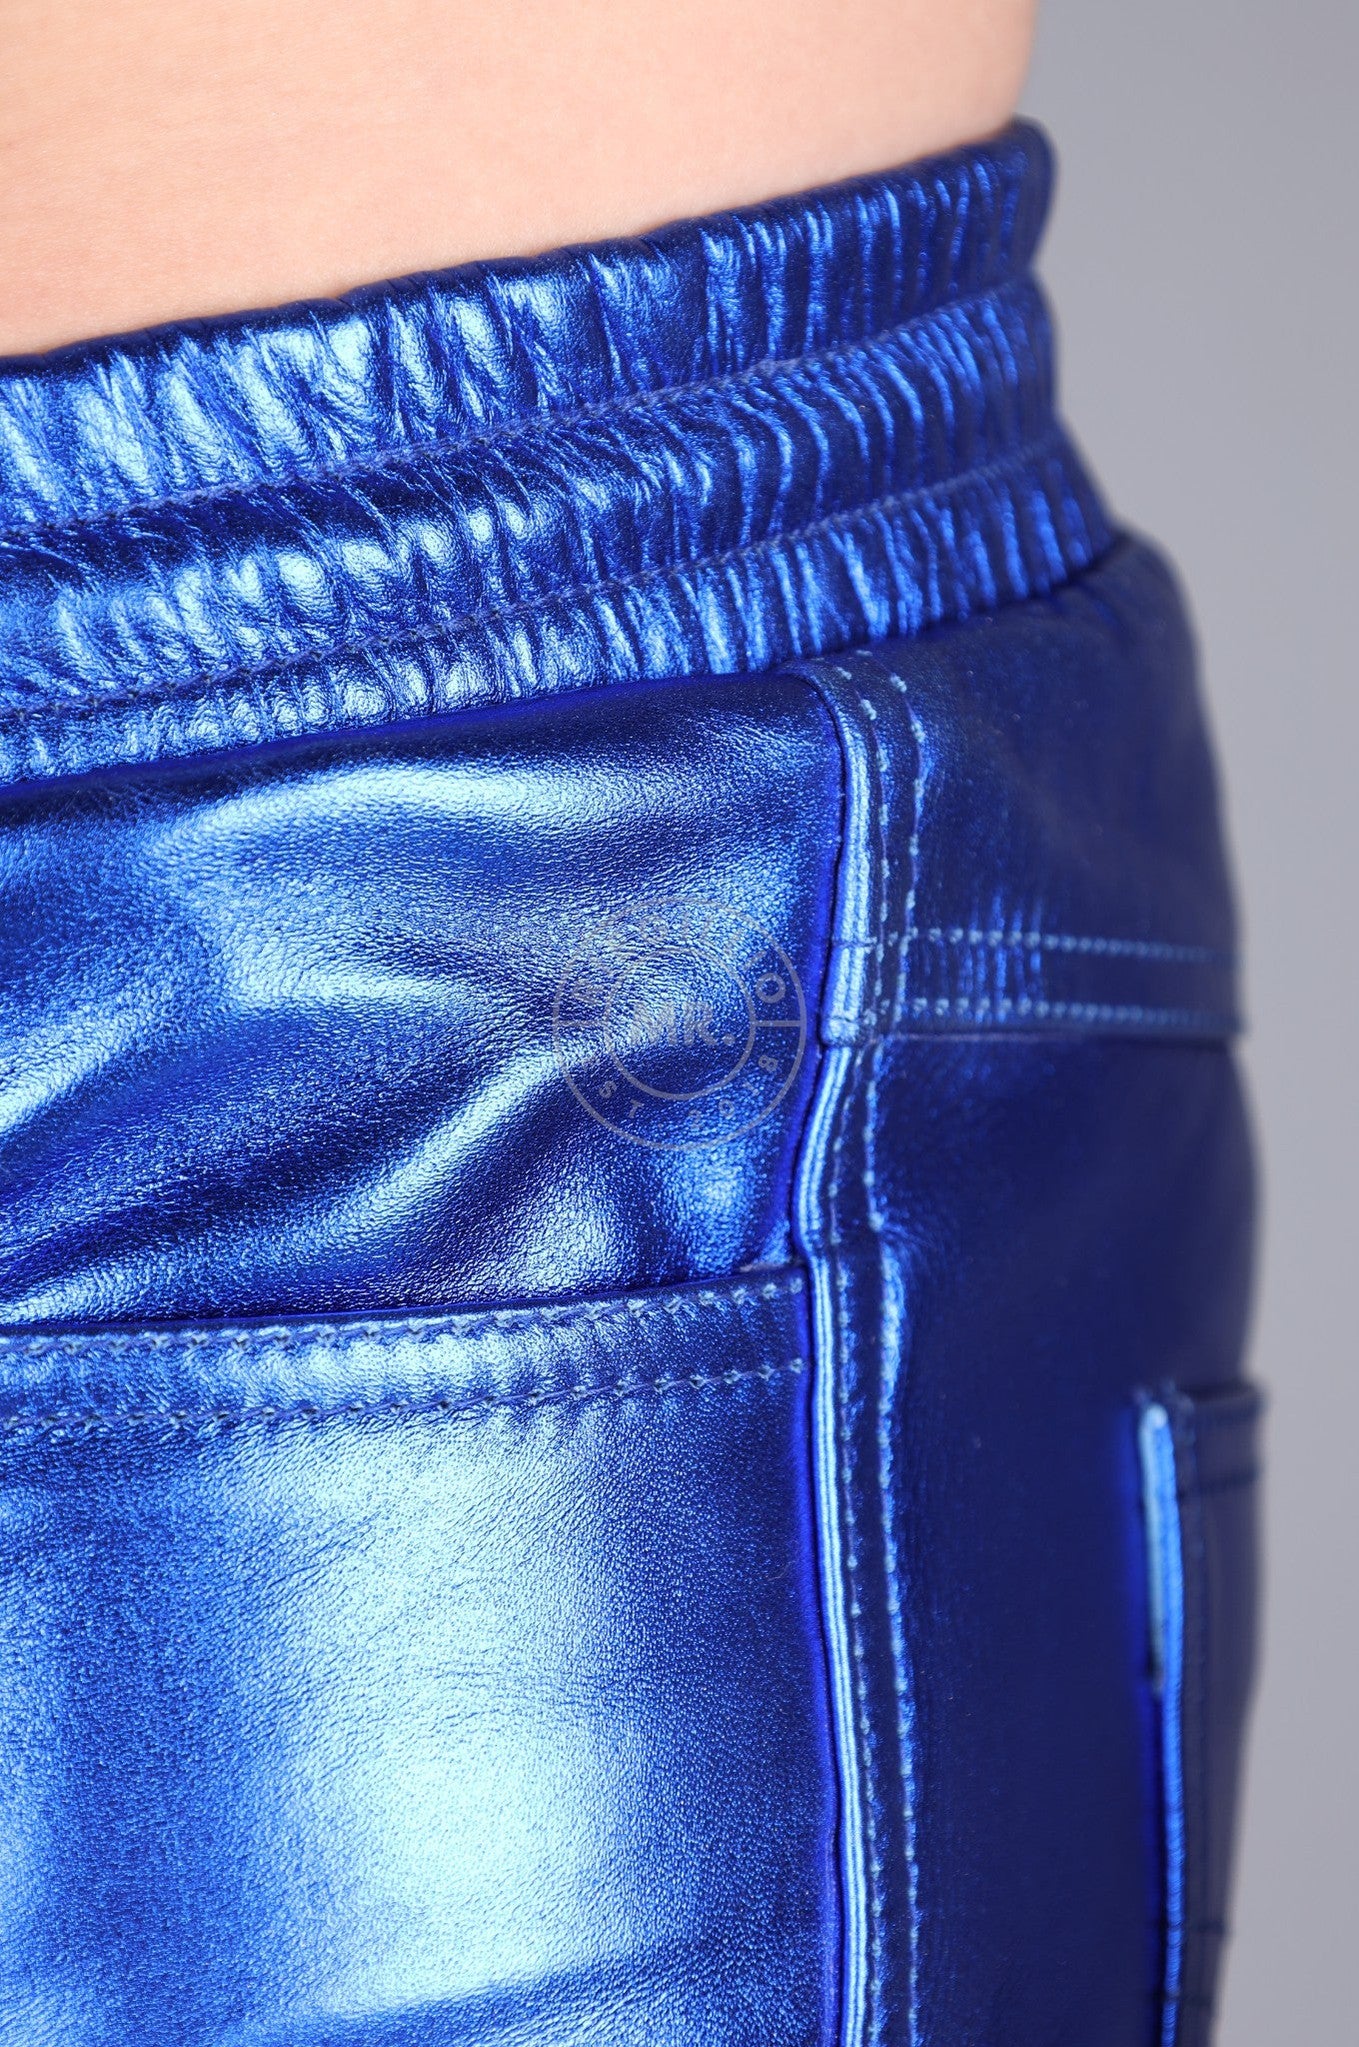 Metallic Leather Short - Blue at MR. Riegillio